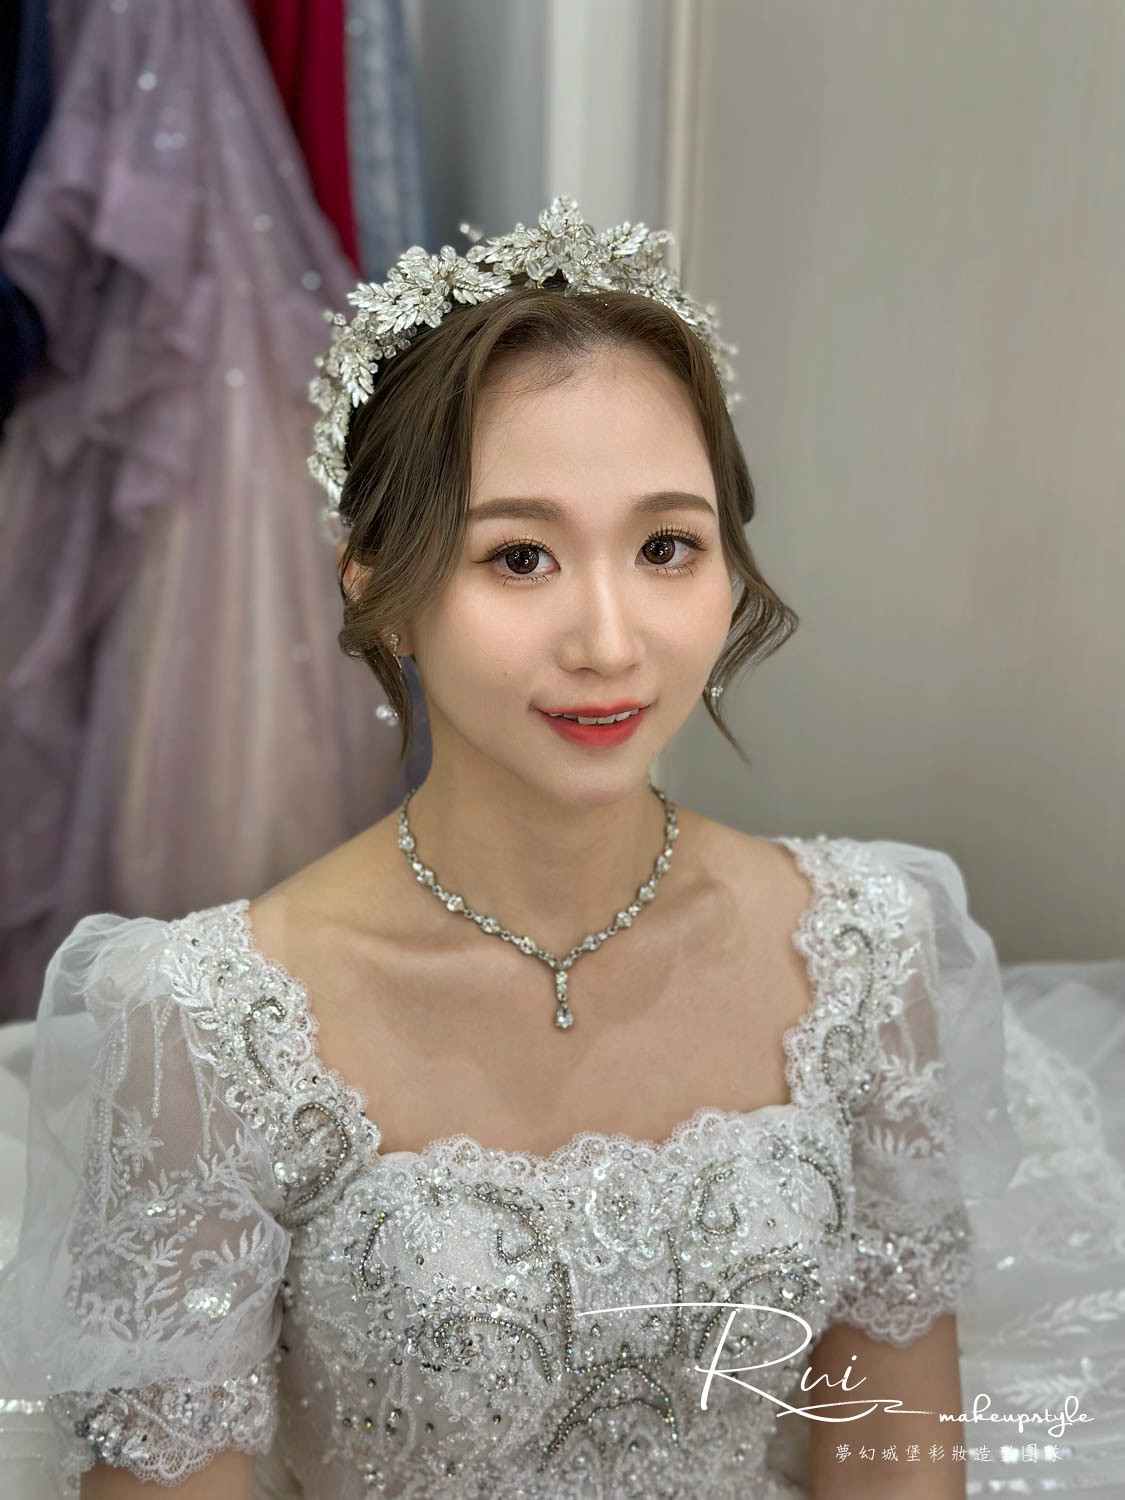 【新秘Rui】bride瓊慧 結婚造型 / 韓系浪漫